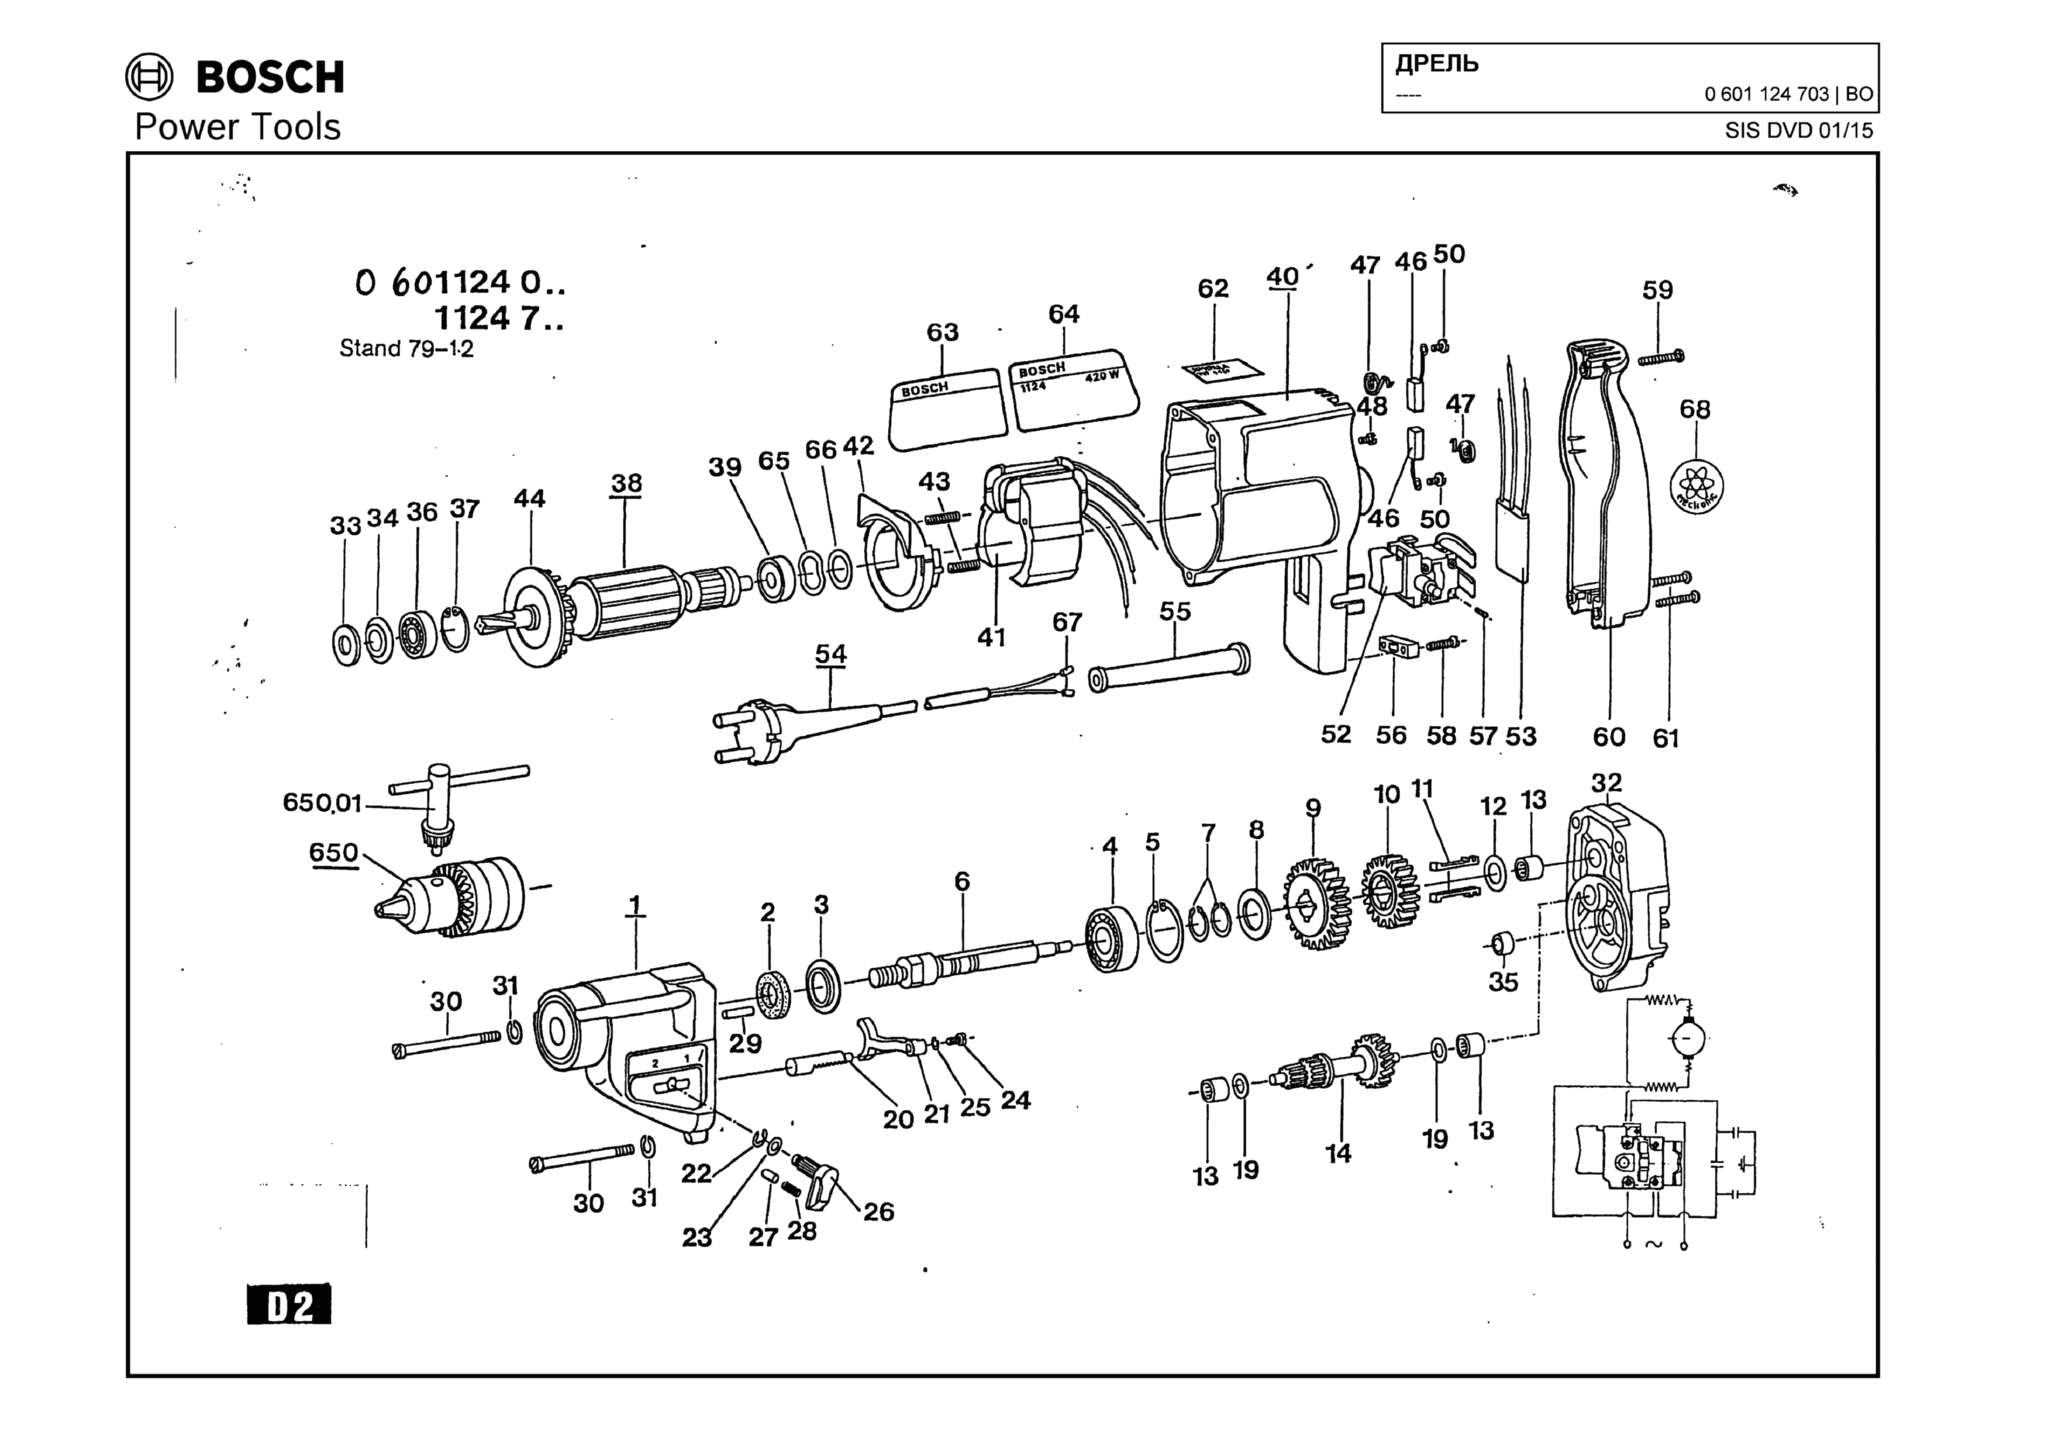 Запчасти, схема и деталировка Bosch (ТИП 0601124703)